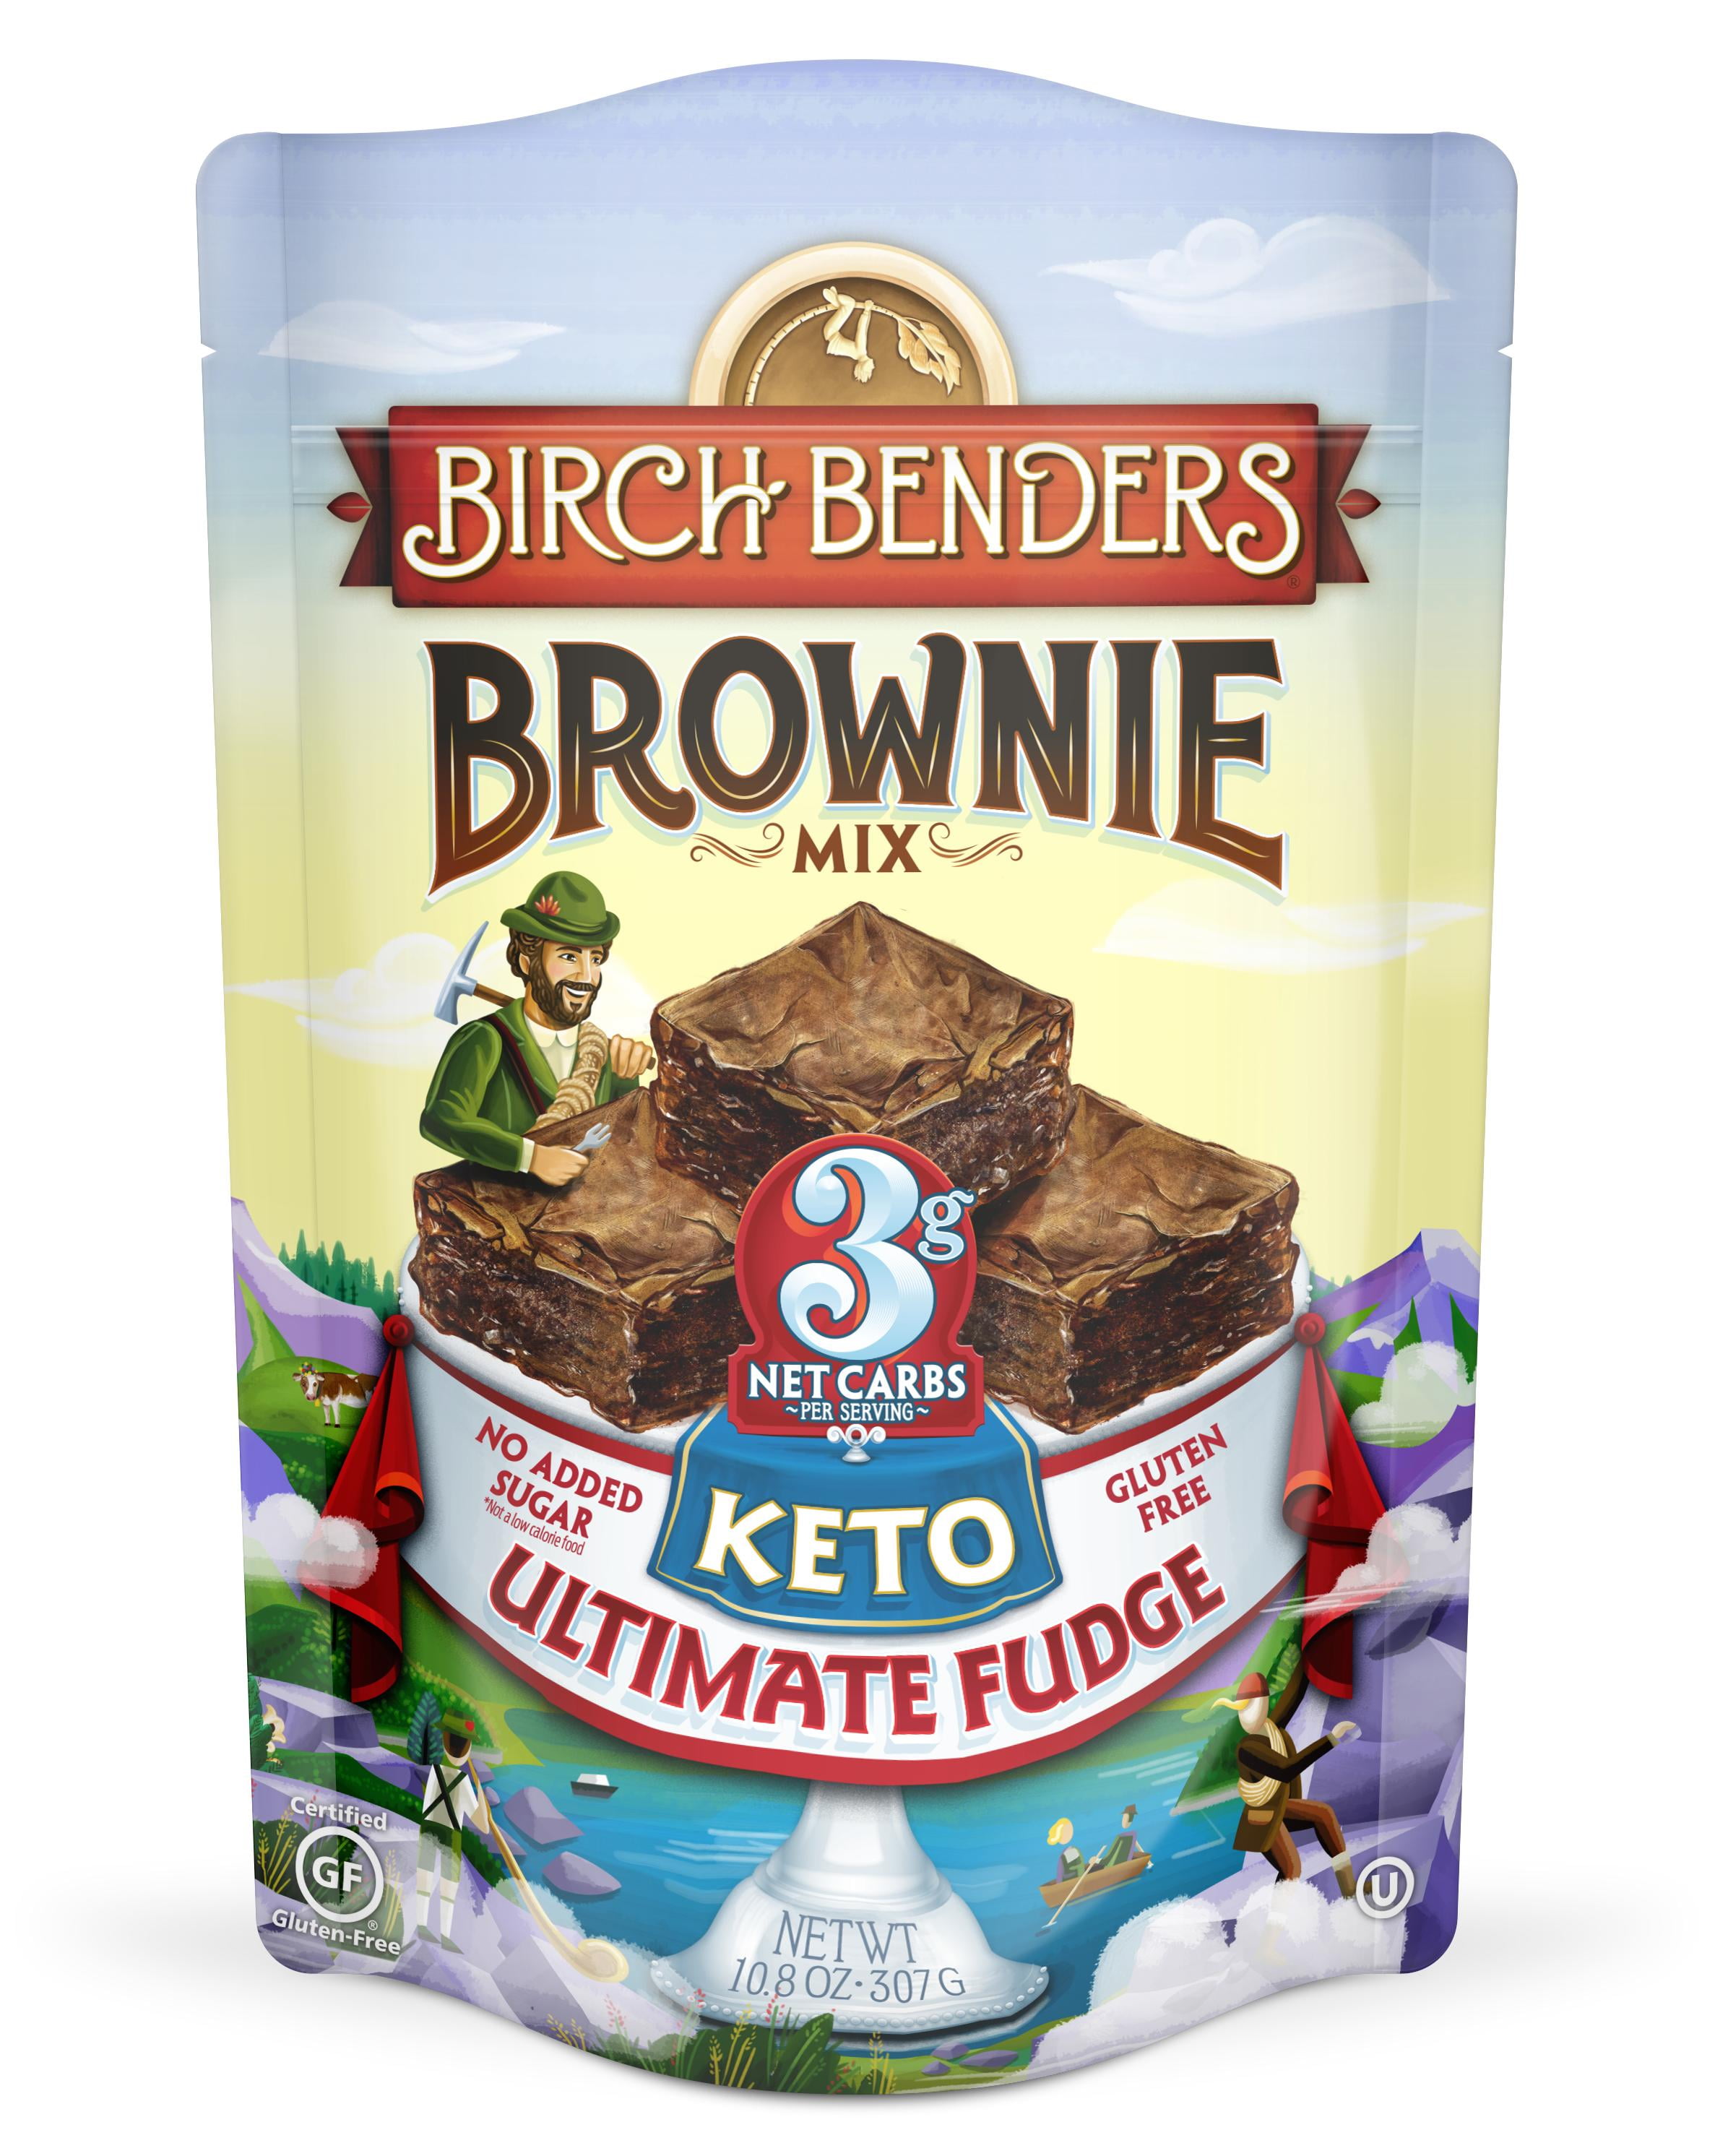 Birch Benders Keto Ultimate Fudge Brownie Mix, 10.8oz